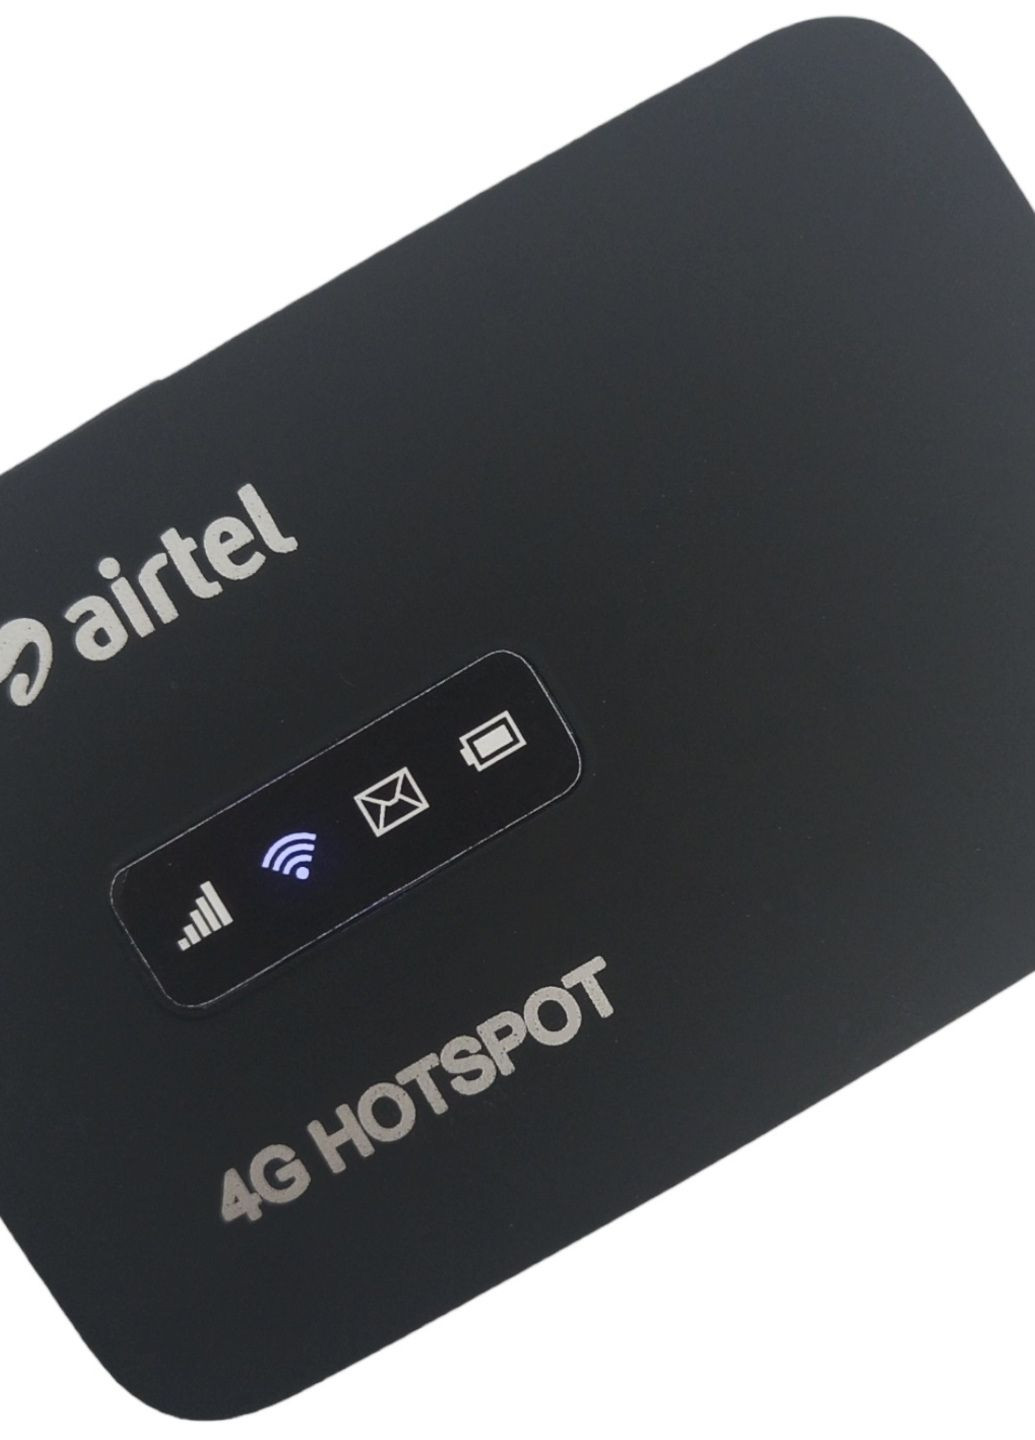 Роутер модем 4G R 217 MW 40 LTE WIFI 3G вайфай выход под антенну 150 Мбит киевстар лайф водафон Alcatel (260043949)